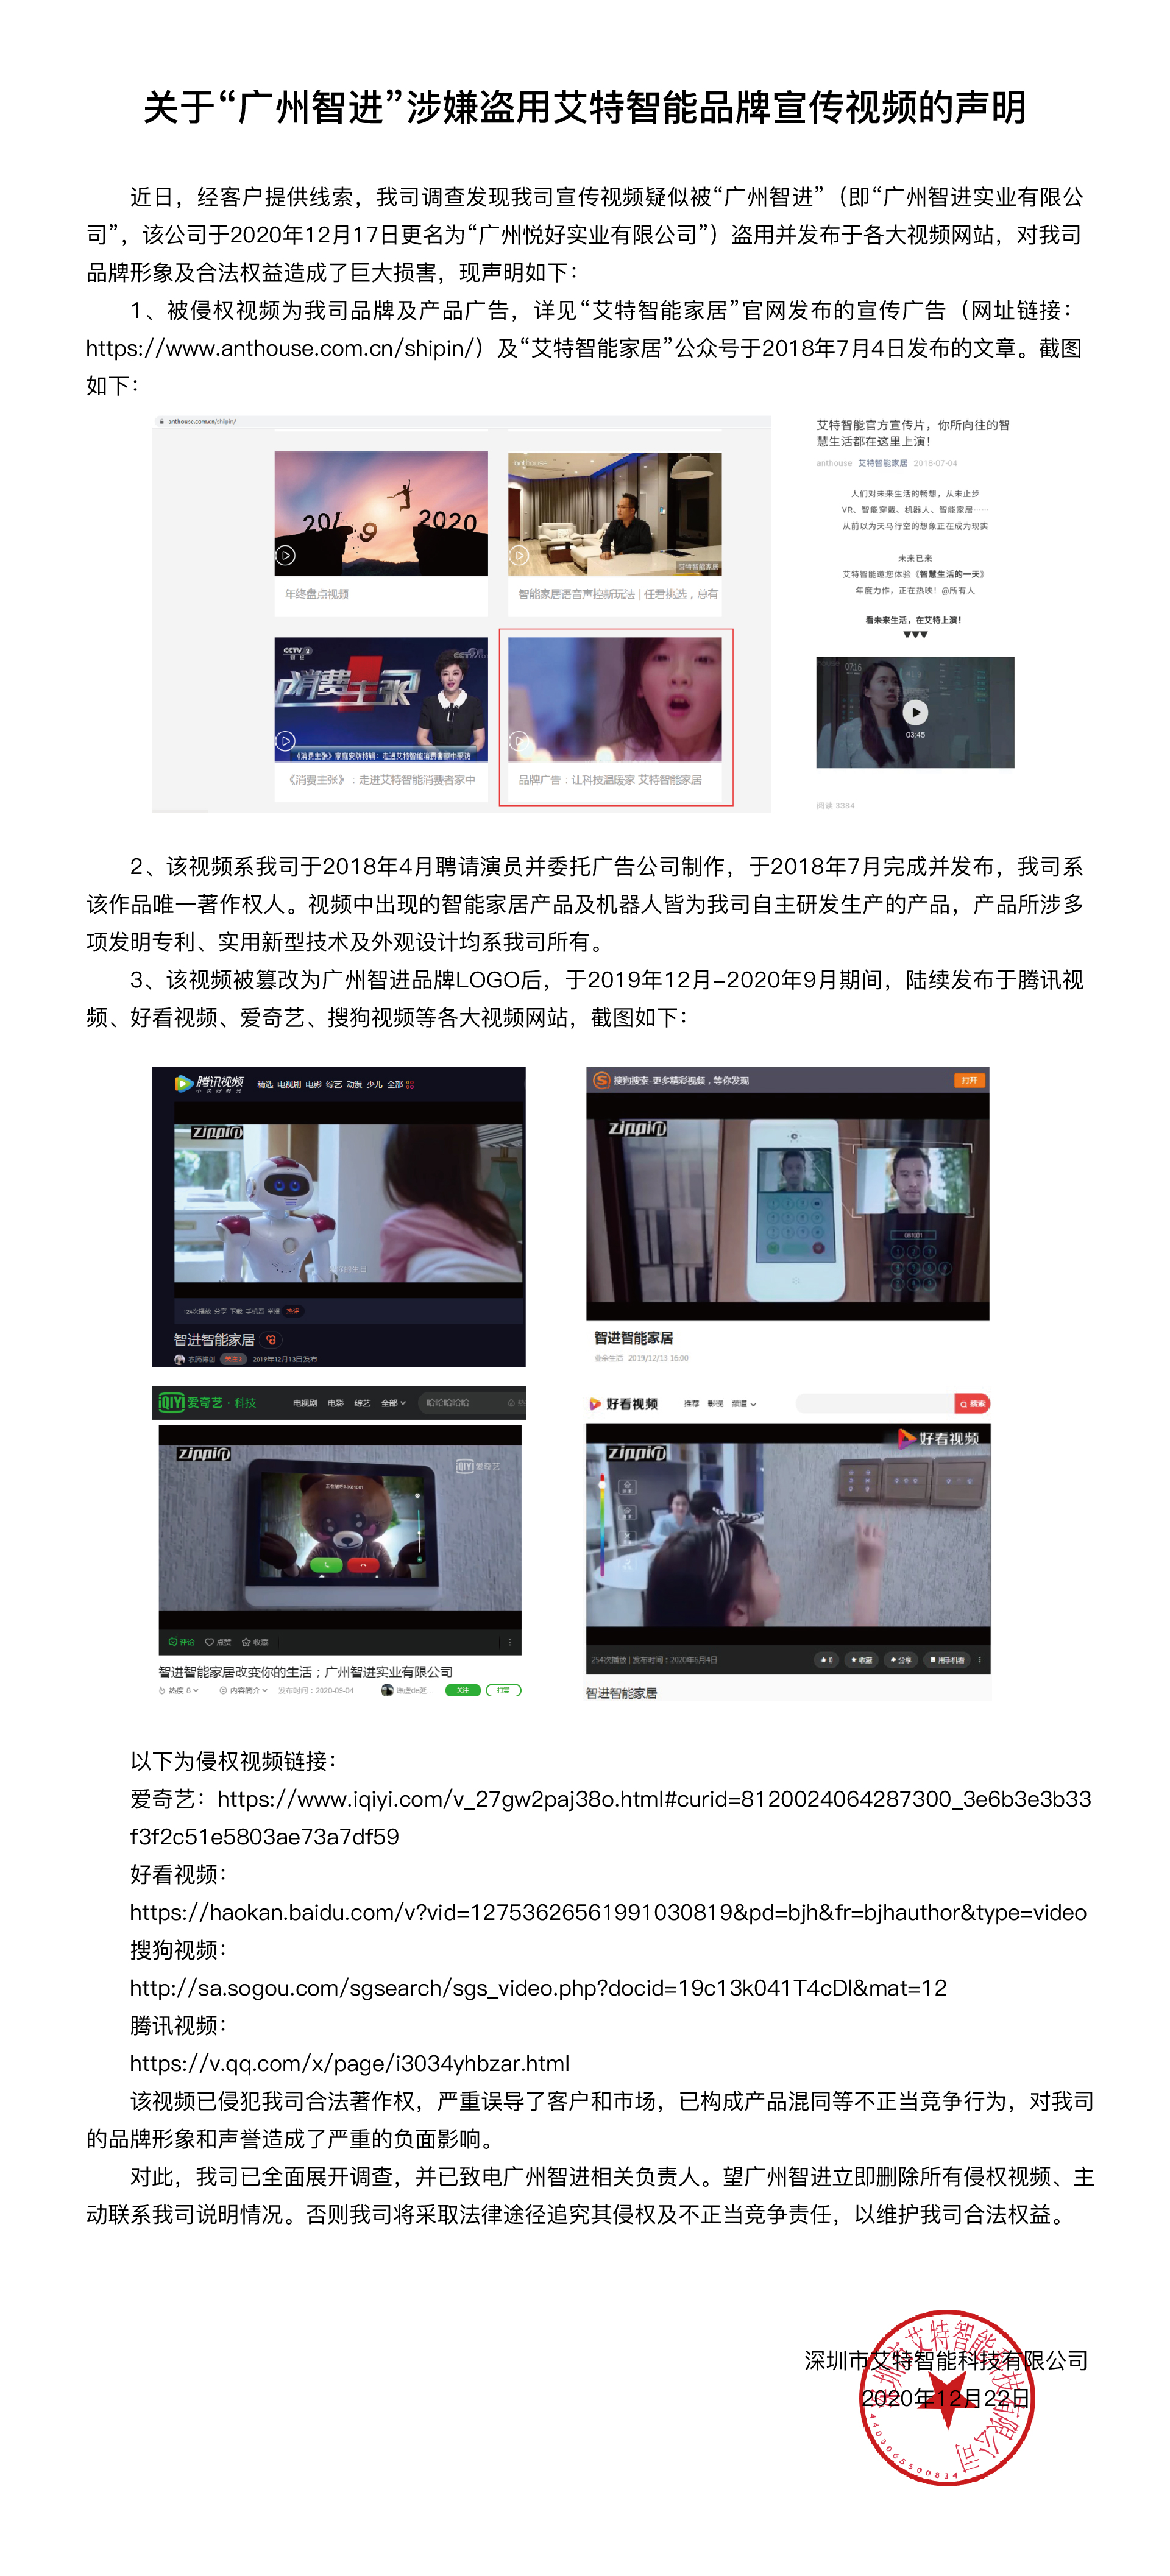 关于“广州智进”涉嫌盗用艾特智能品牌宣传视频的声明